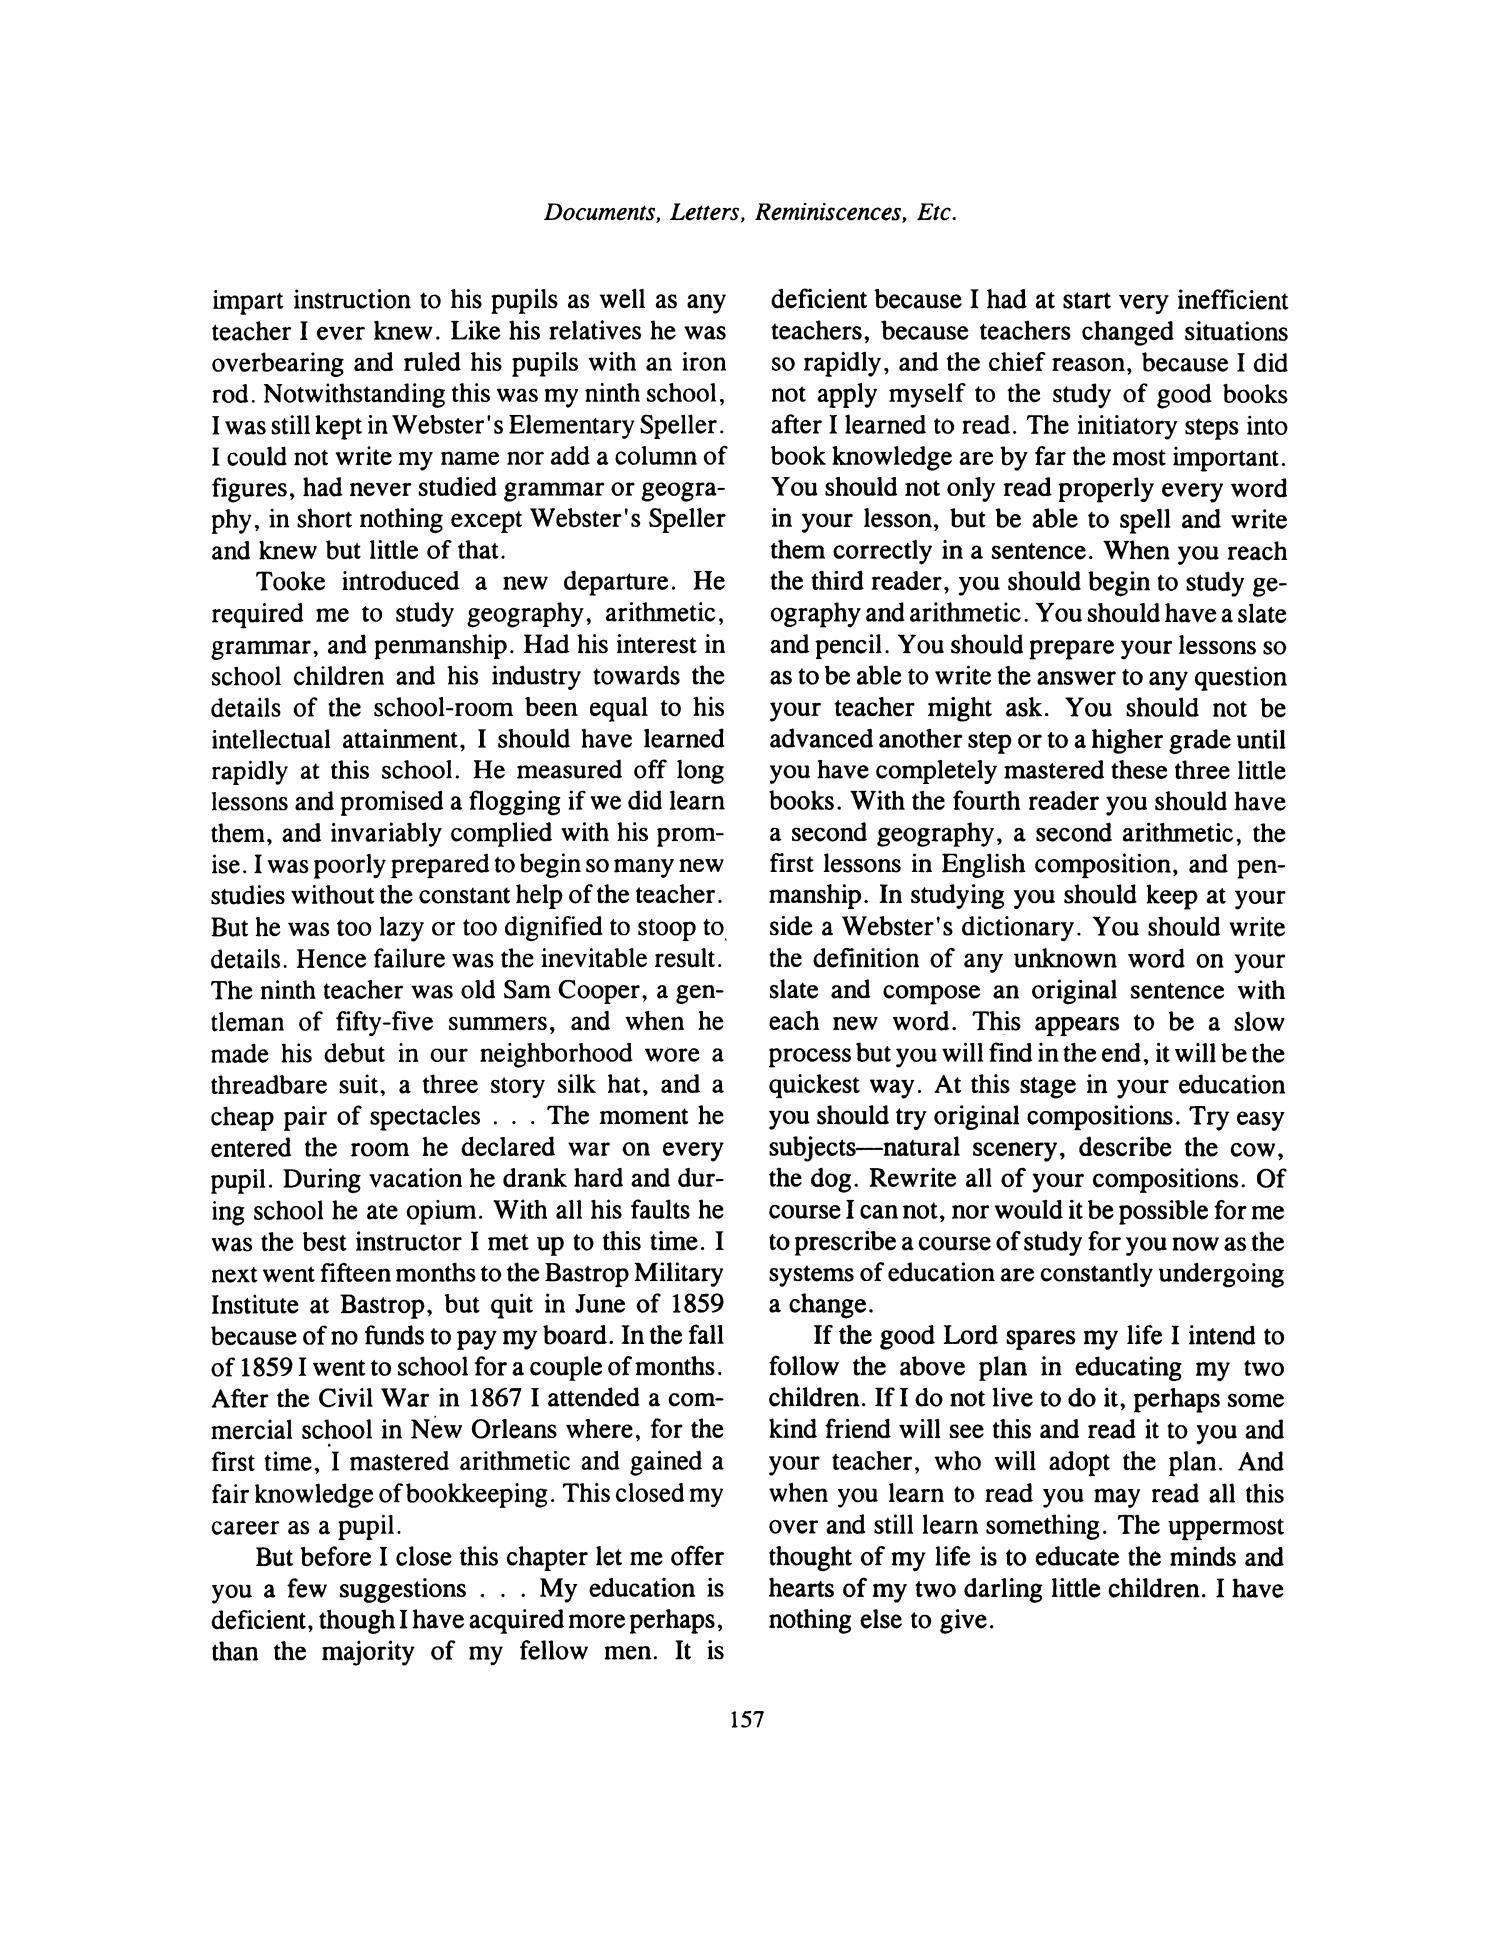 Nesbitt Memorial Library Journal, Volume 6, Number 3, September 1996
                                                
                                                    157
                                                